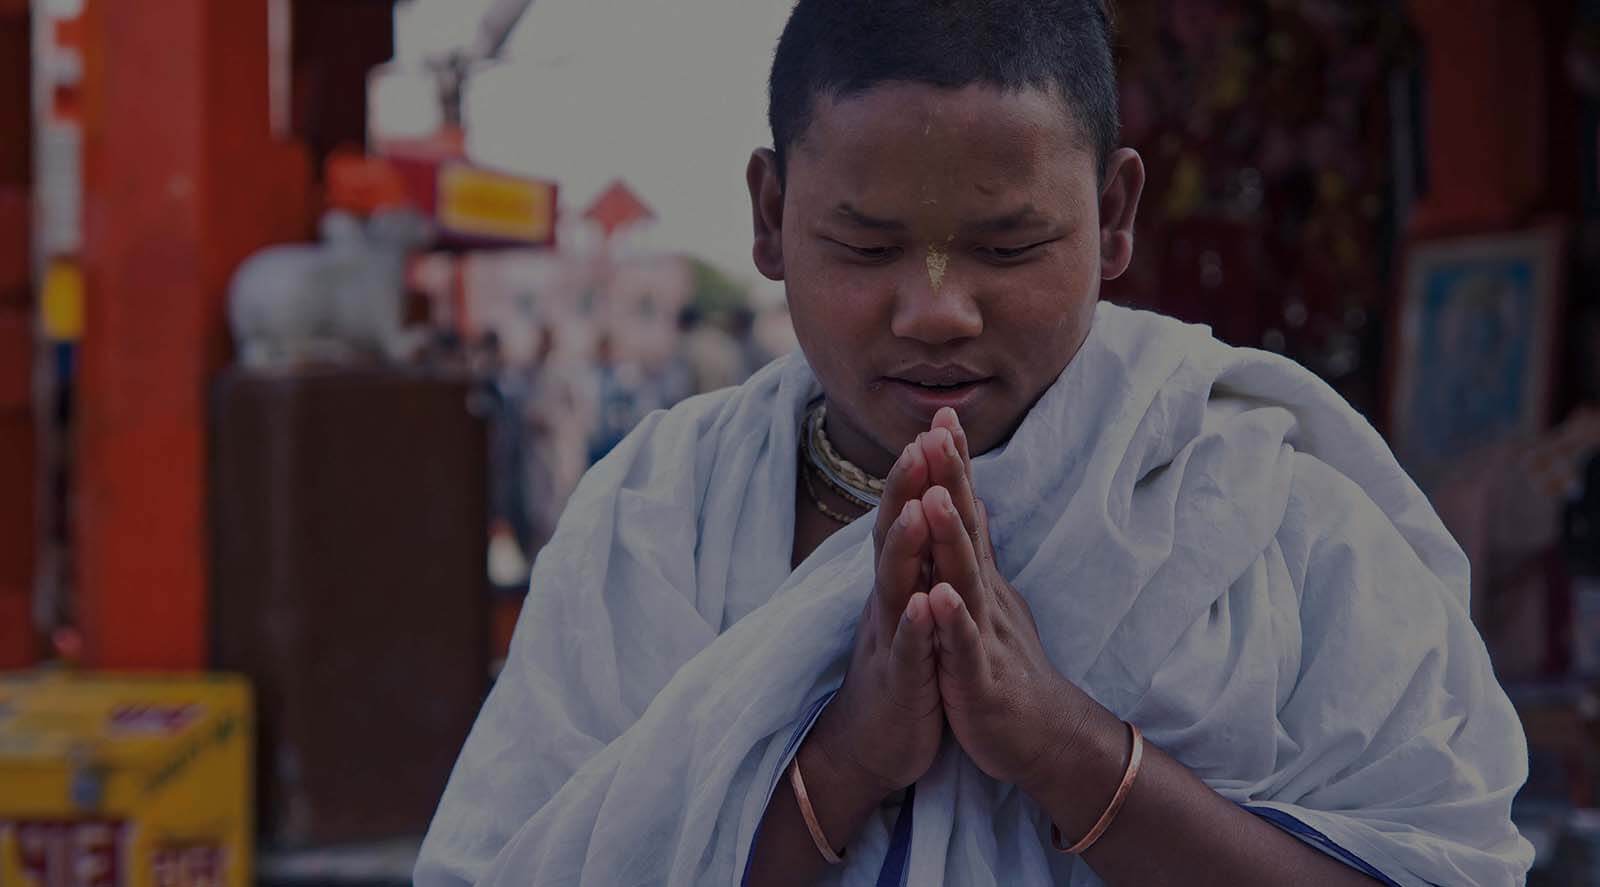 Hindu boy praying